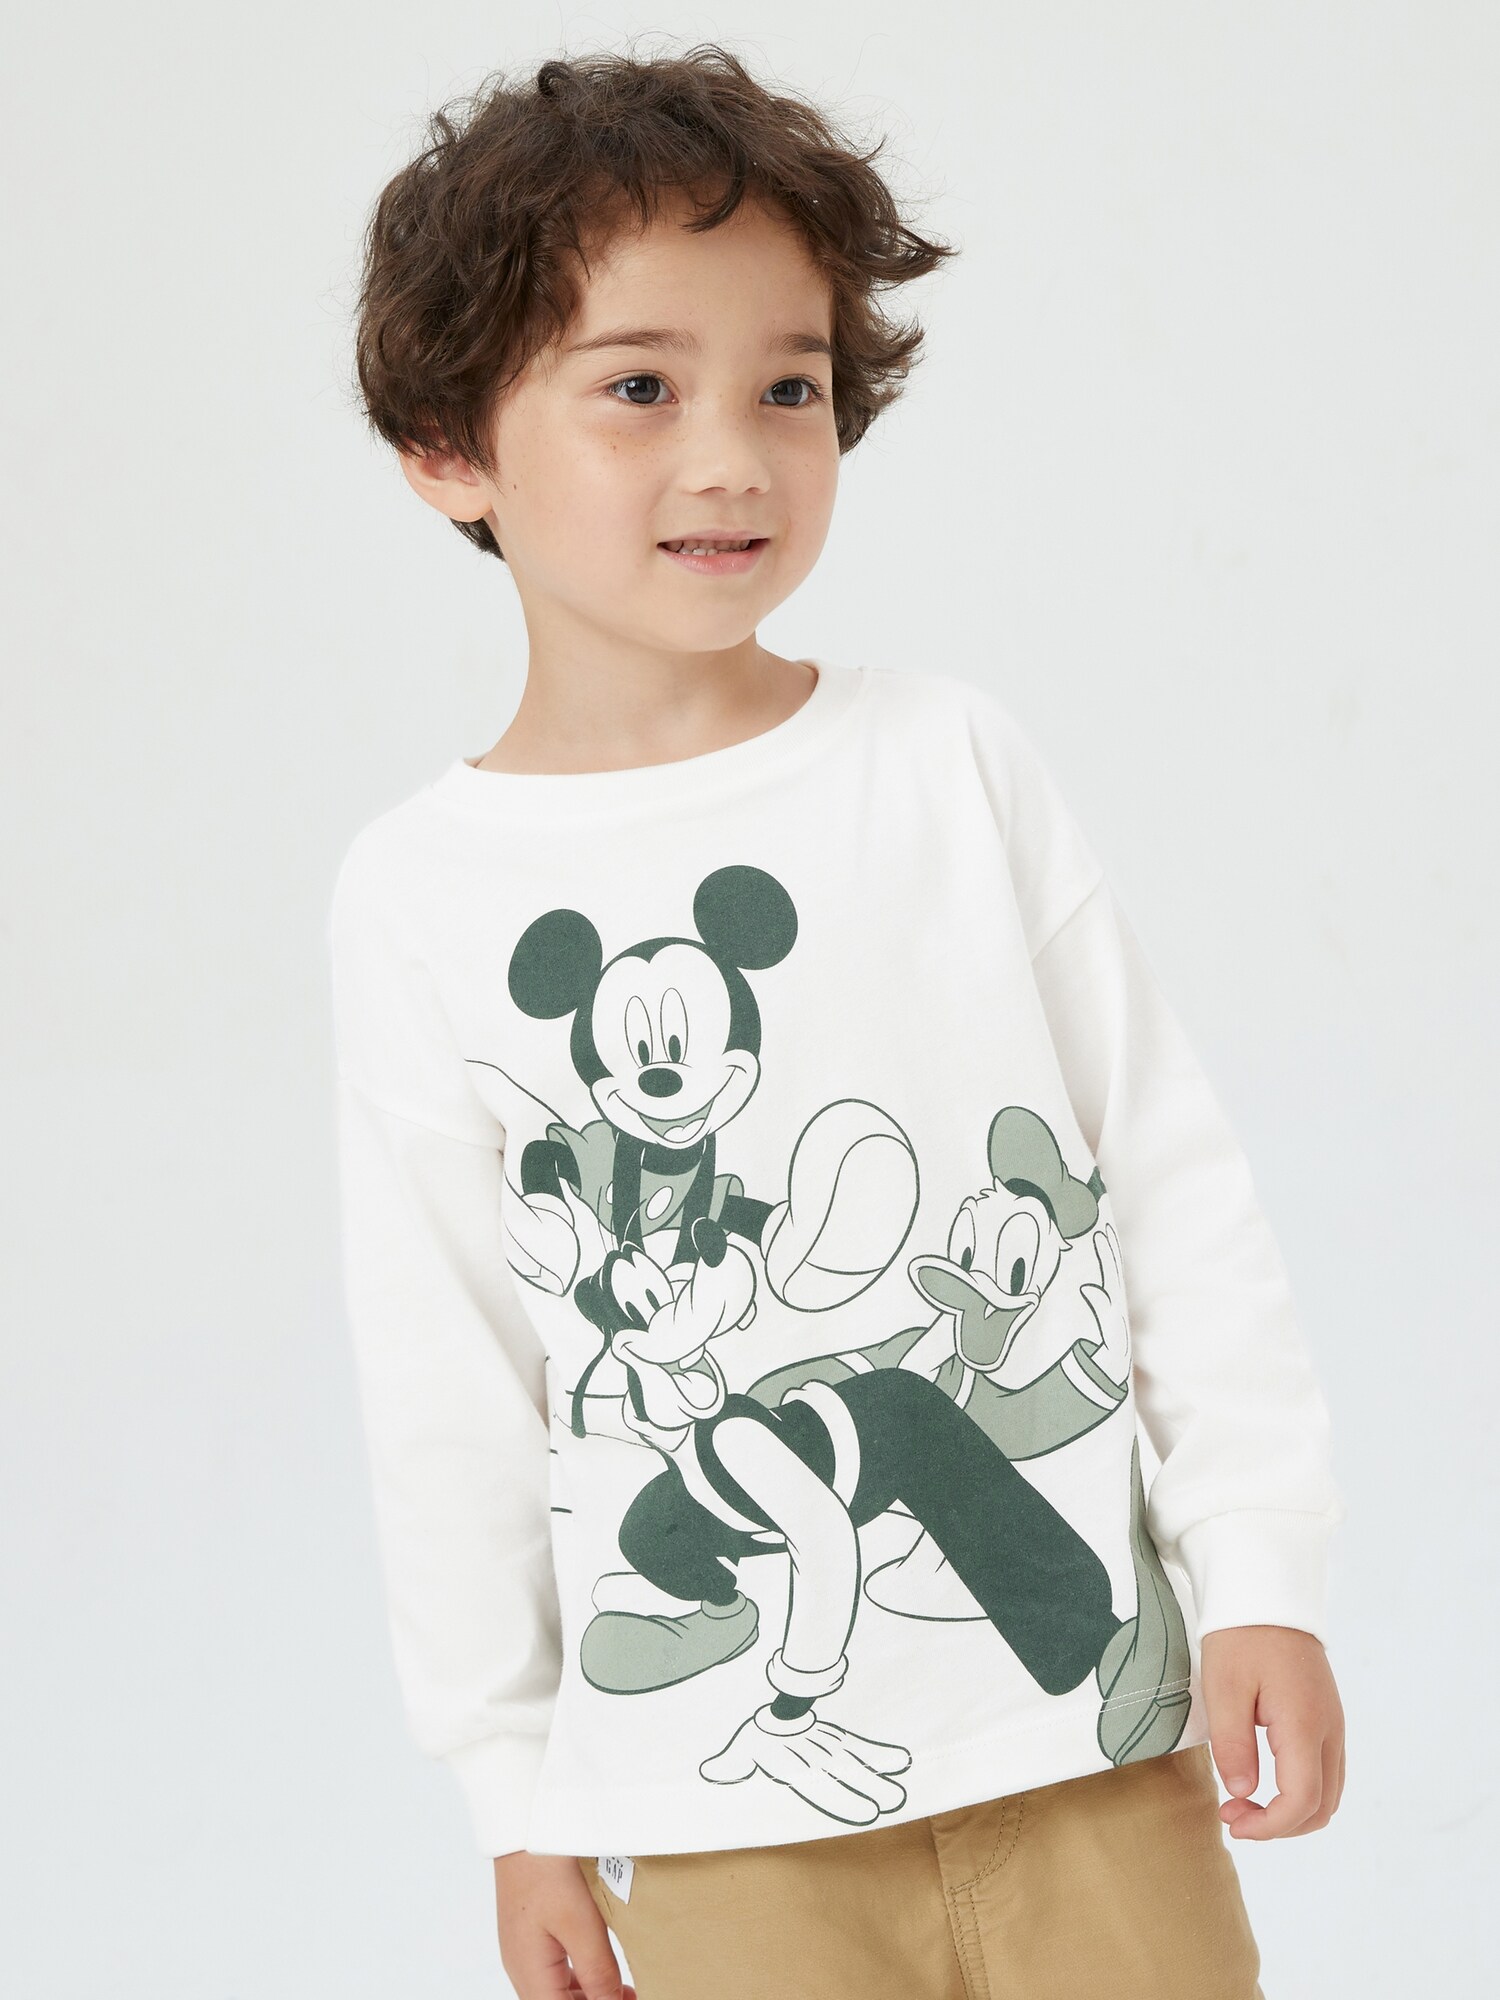 Babygap ディズニー オーガニックコットン100% ミッキーマウス グラフィックtシャツ